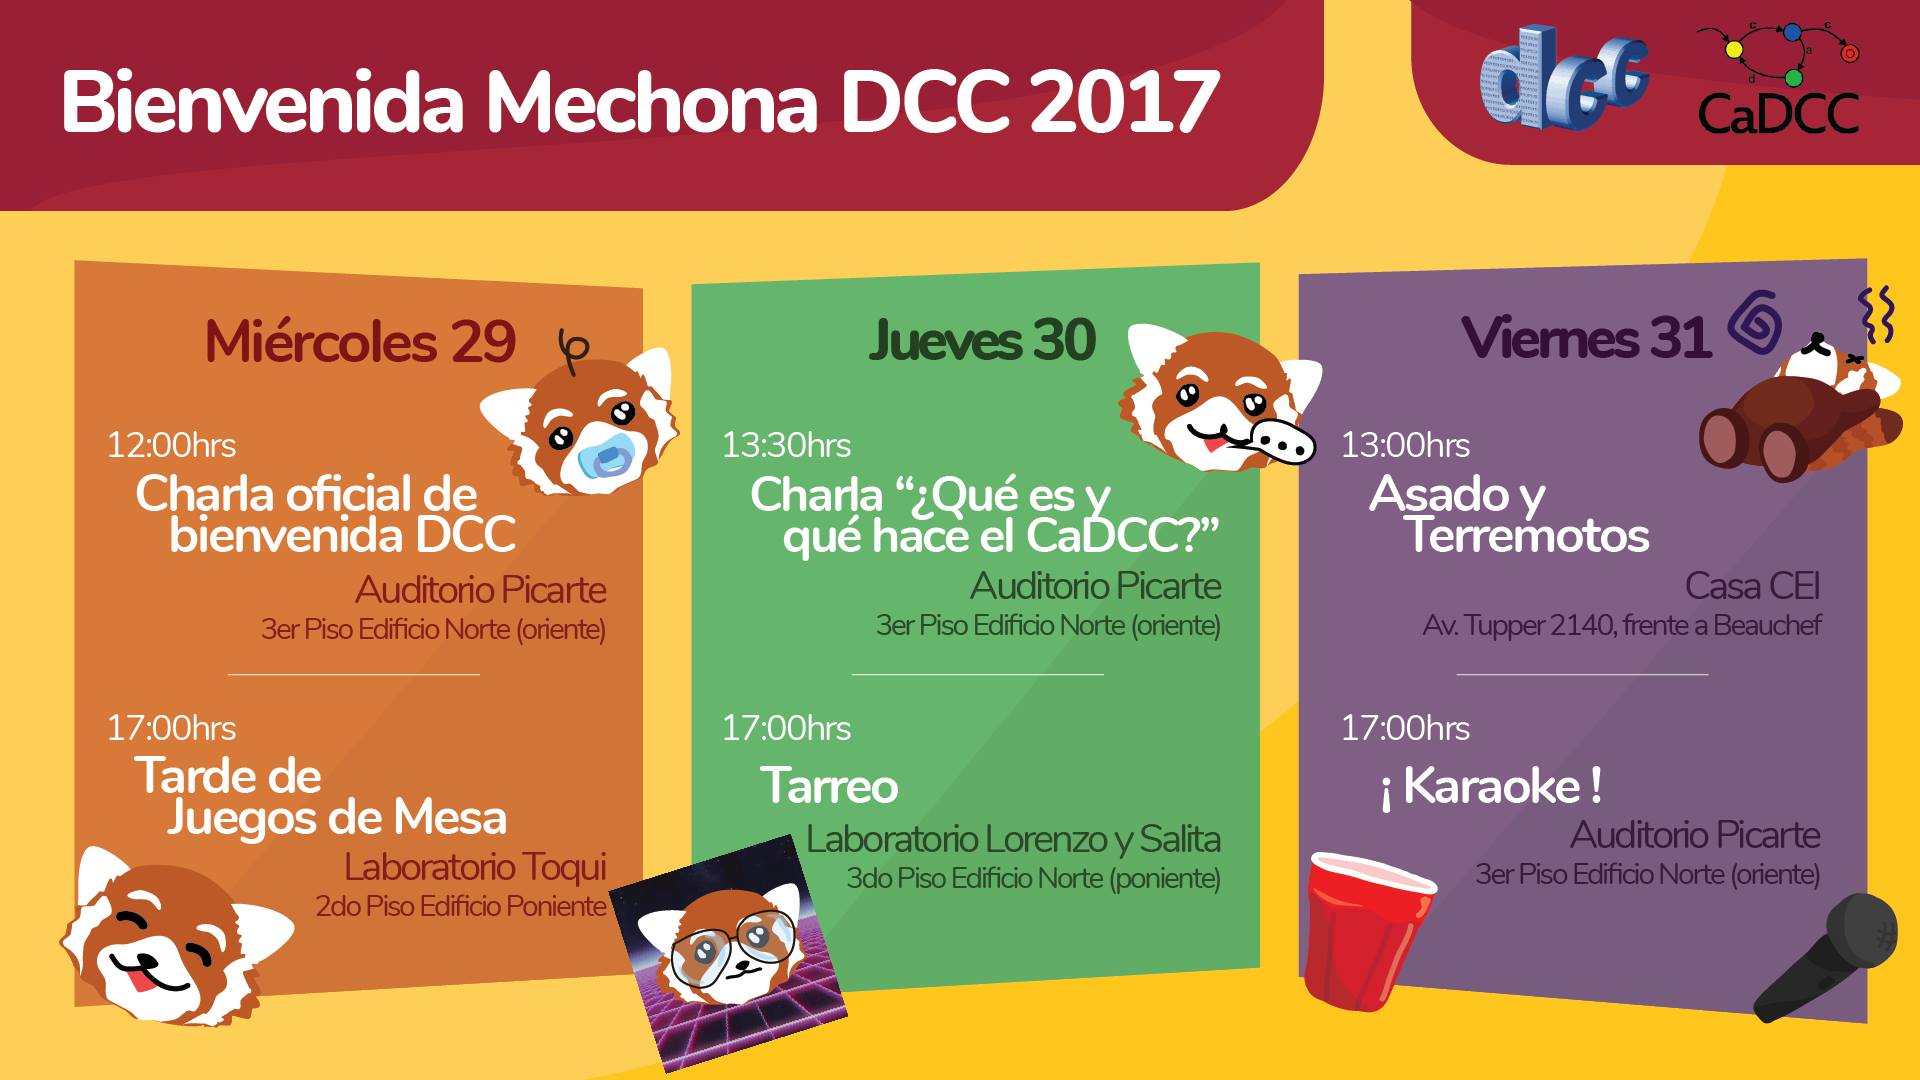 Bienvenida Mechona, Afiche Oficial